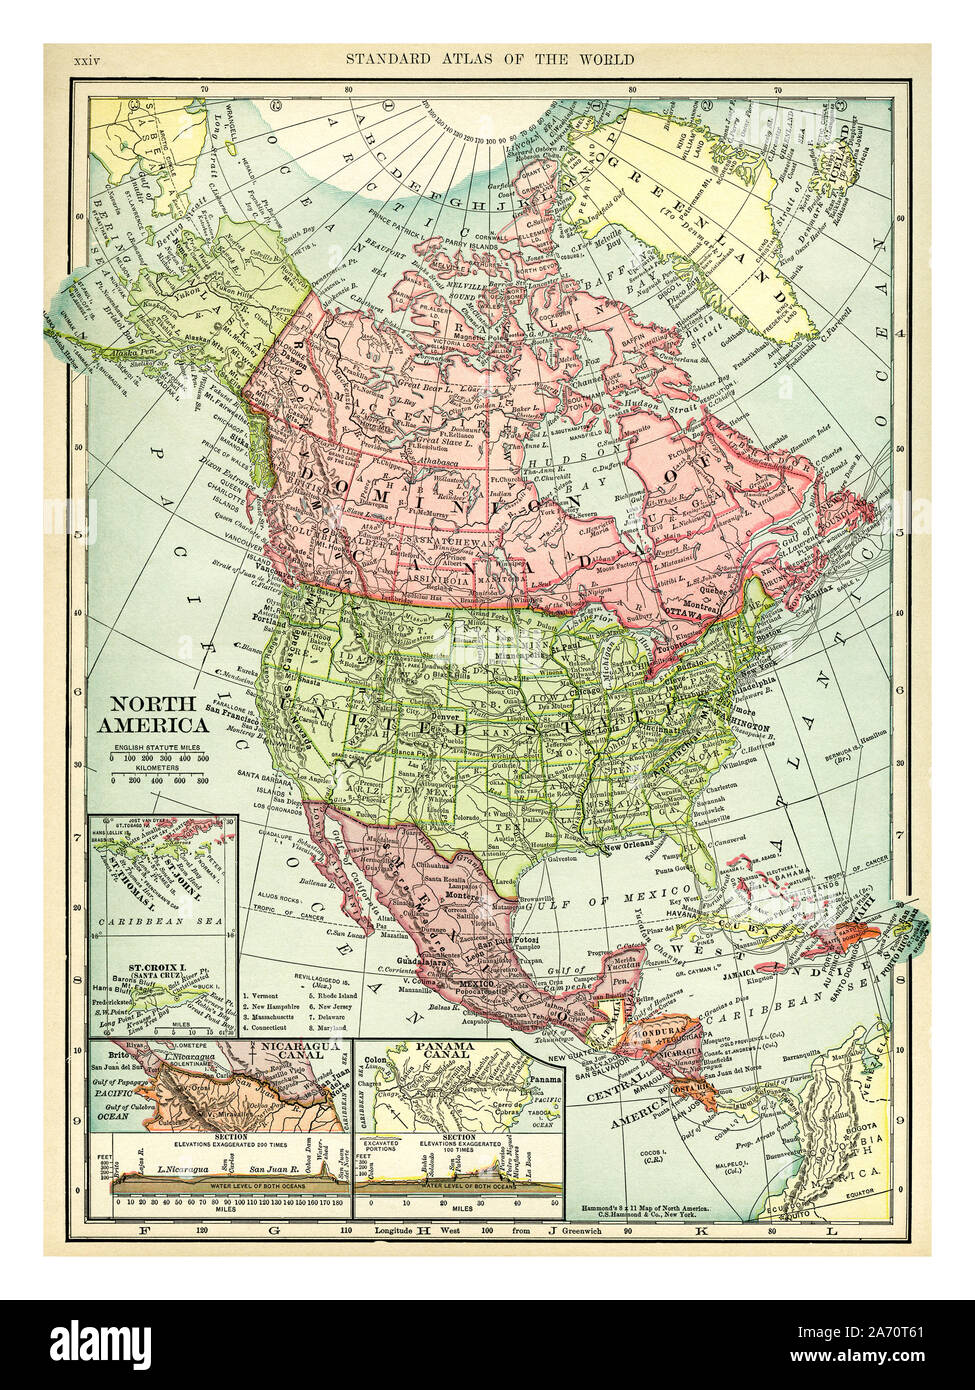 Vintage 1906 Mapa de América del Norte. Países incluidos en este mapa son: Canadá, Groenlandia, Estados Unidos, México, Guatemala, Honduras, Nicaragua, Costa Rica, Cuba y Haití. C. S. Hammond mapa impresa y publicada en 1906. Foto de stock